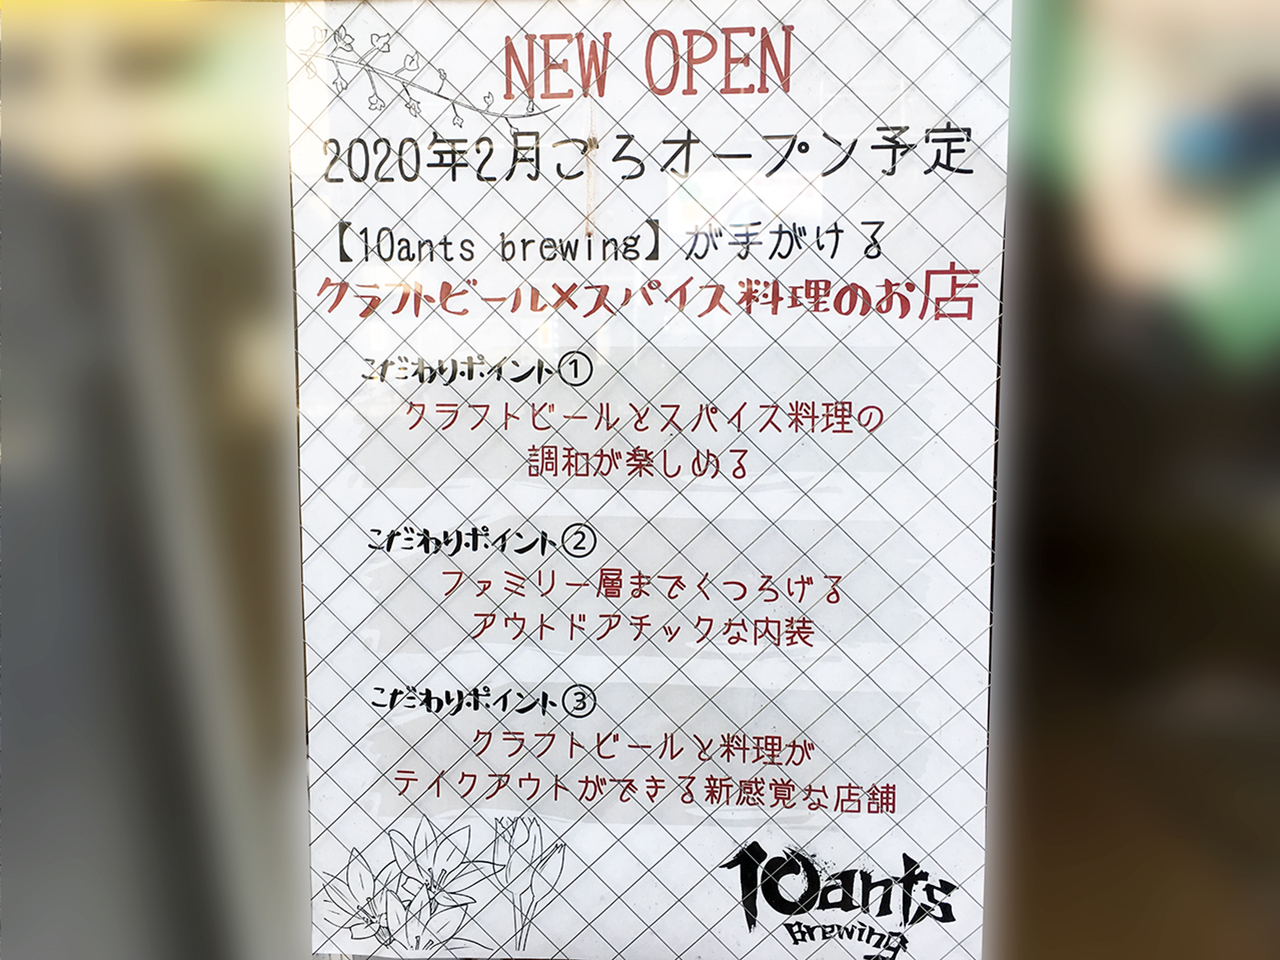 来年！2020年2月に聖蹟桜ヶ丘エリアにクラフトビール×スパイス料理のお店がオープンするようです♪